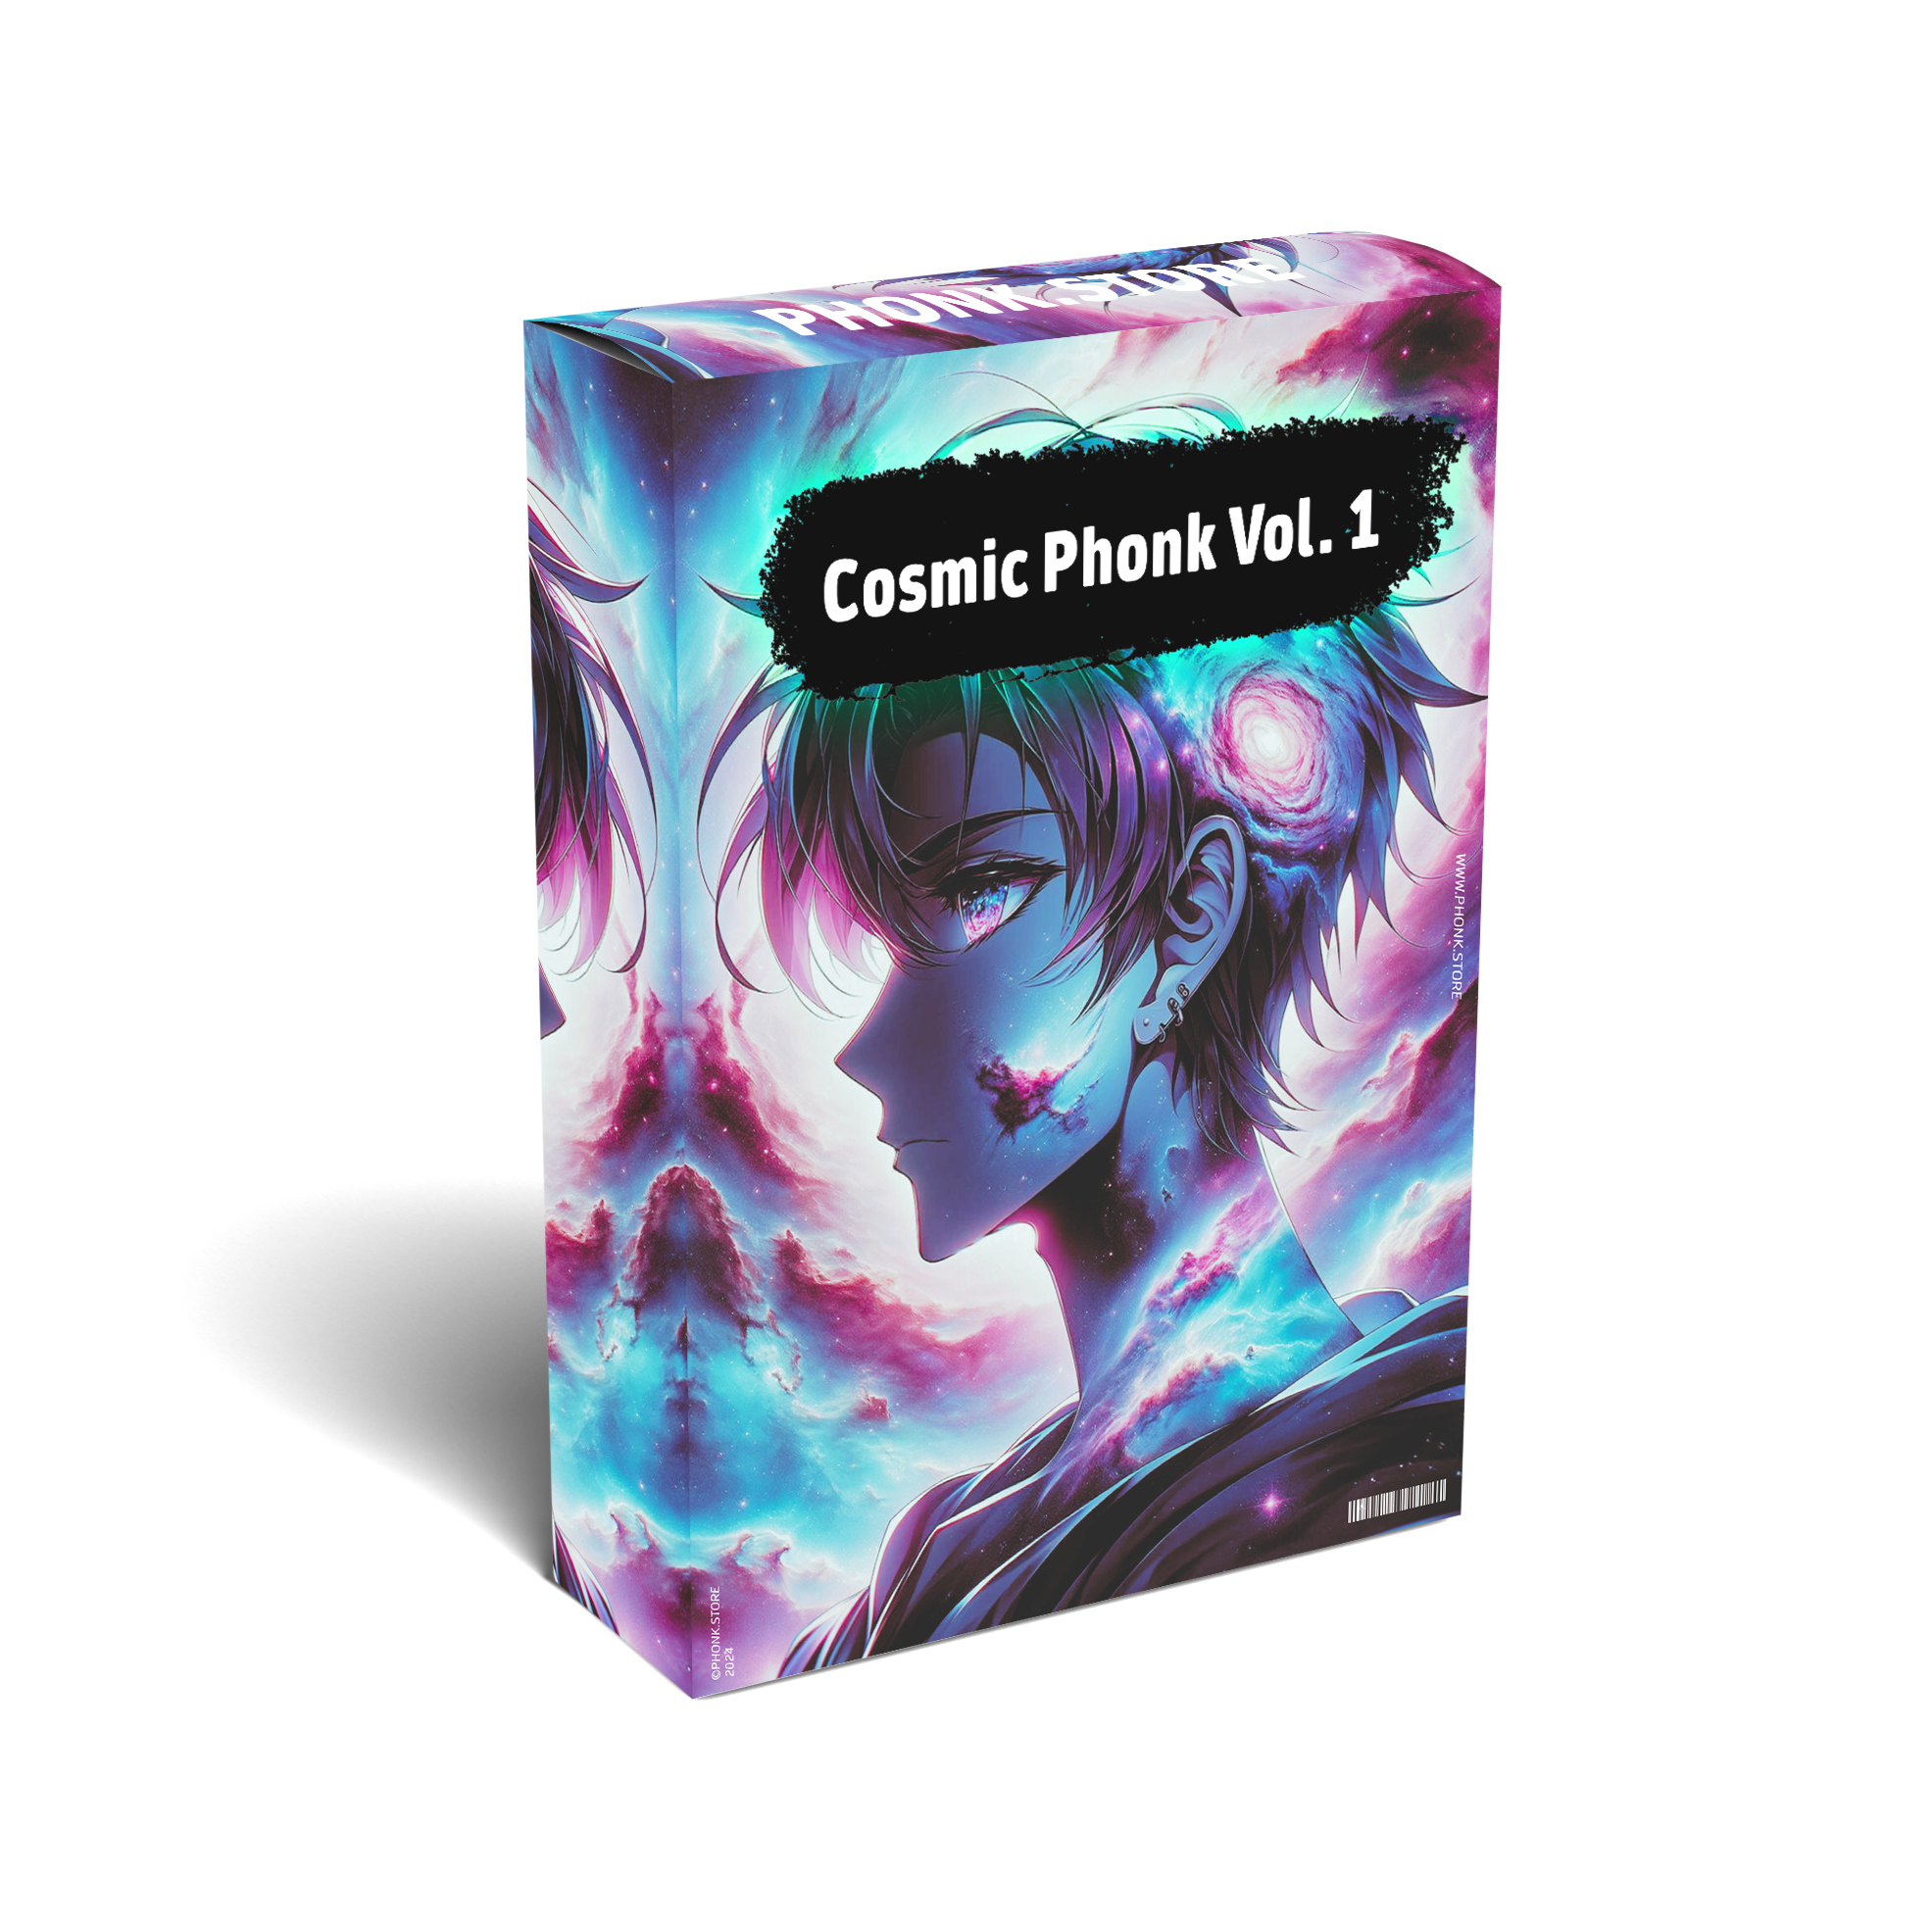 Cosmic Phonk Vol. 1